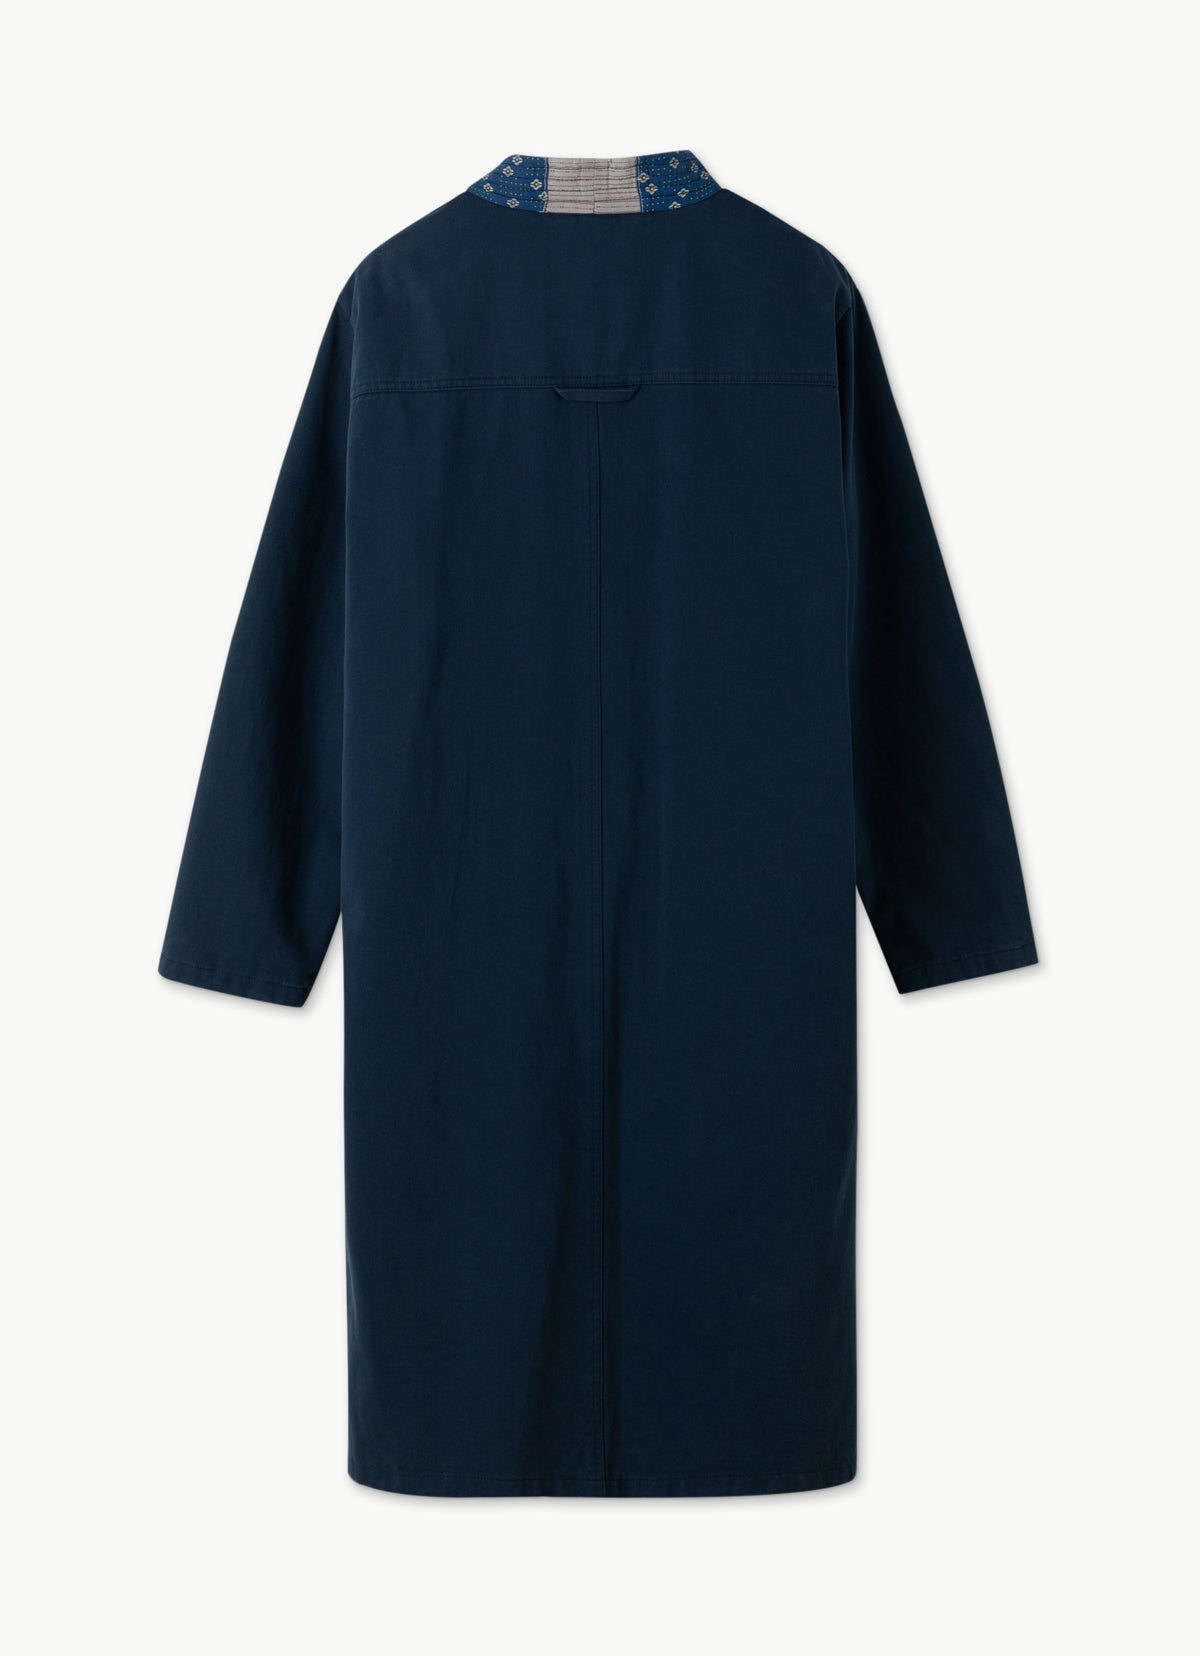 [Flagship Edition] Shabby robe_Navy